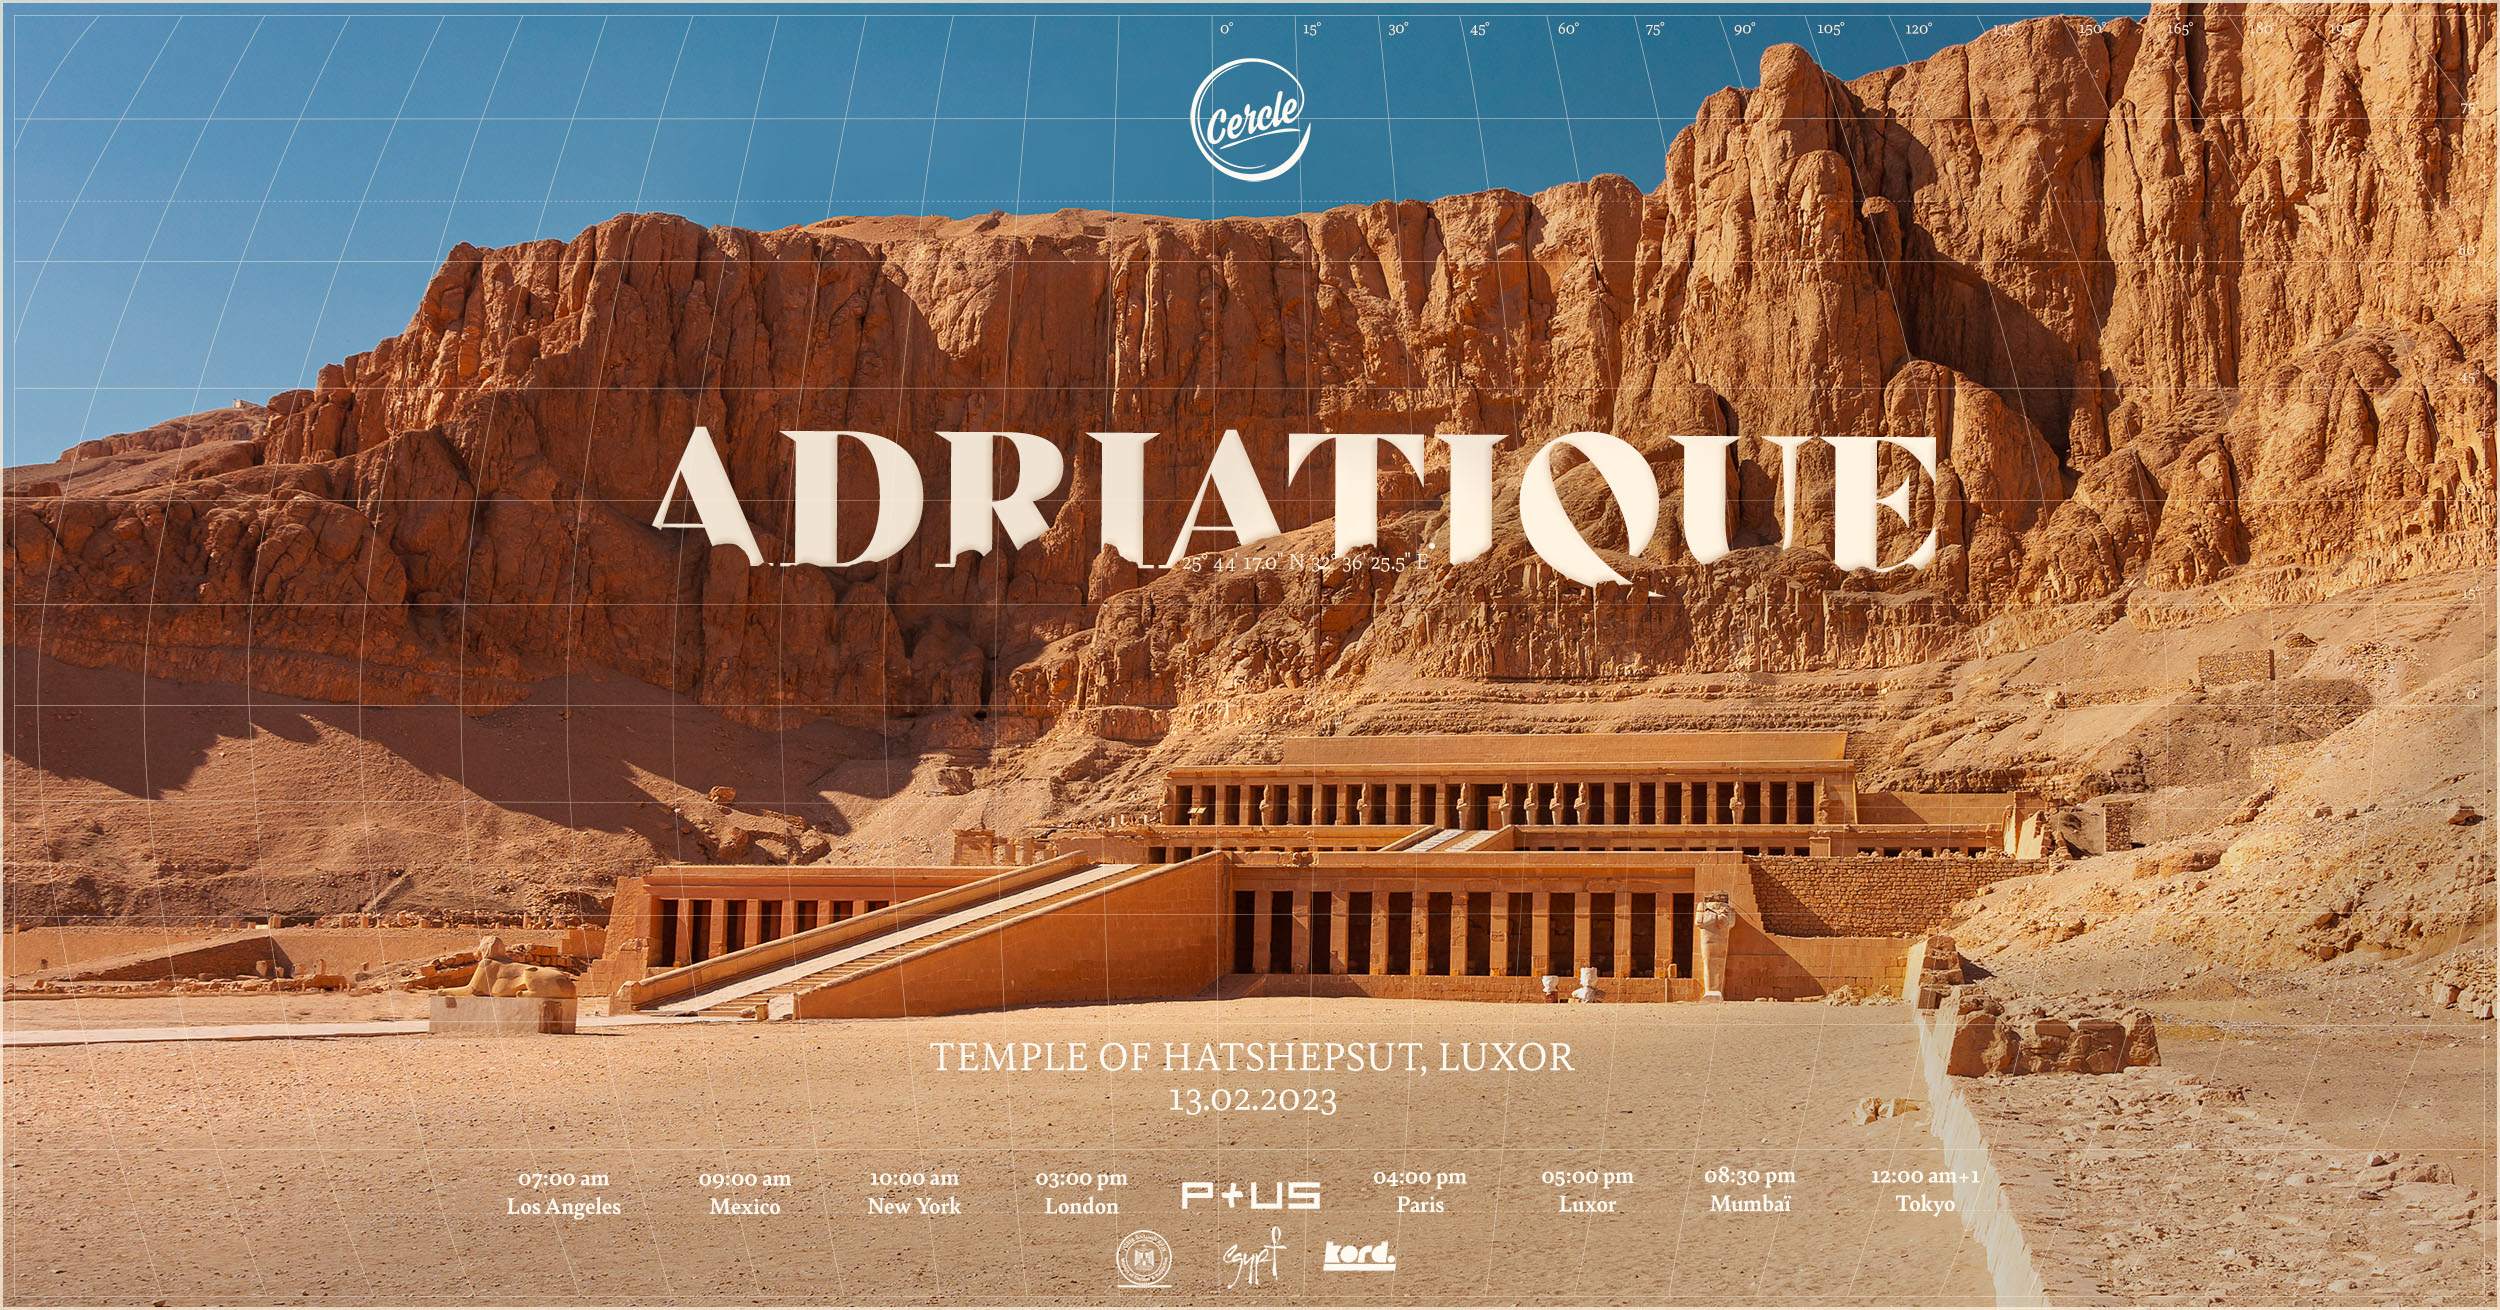 Adriatique live for Cercle at Hatshepsut Temple, Egypt